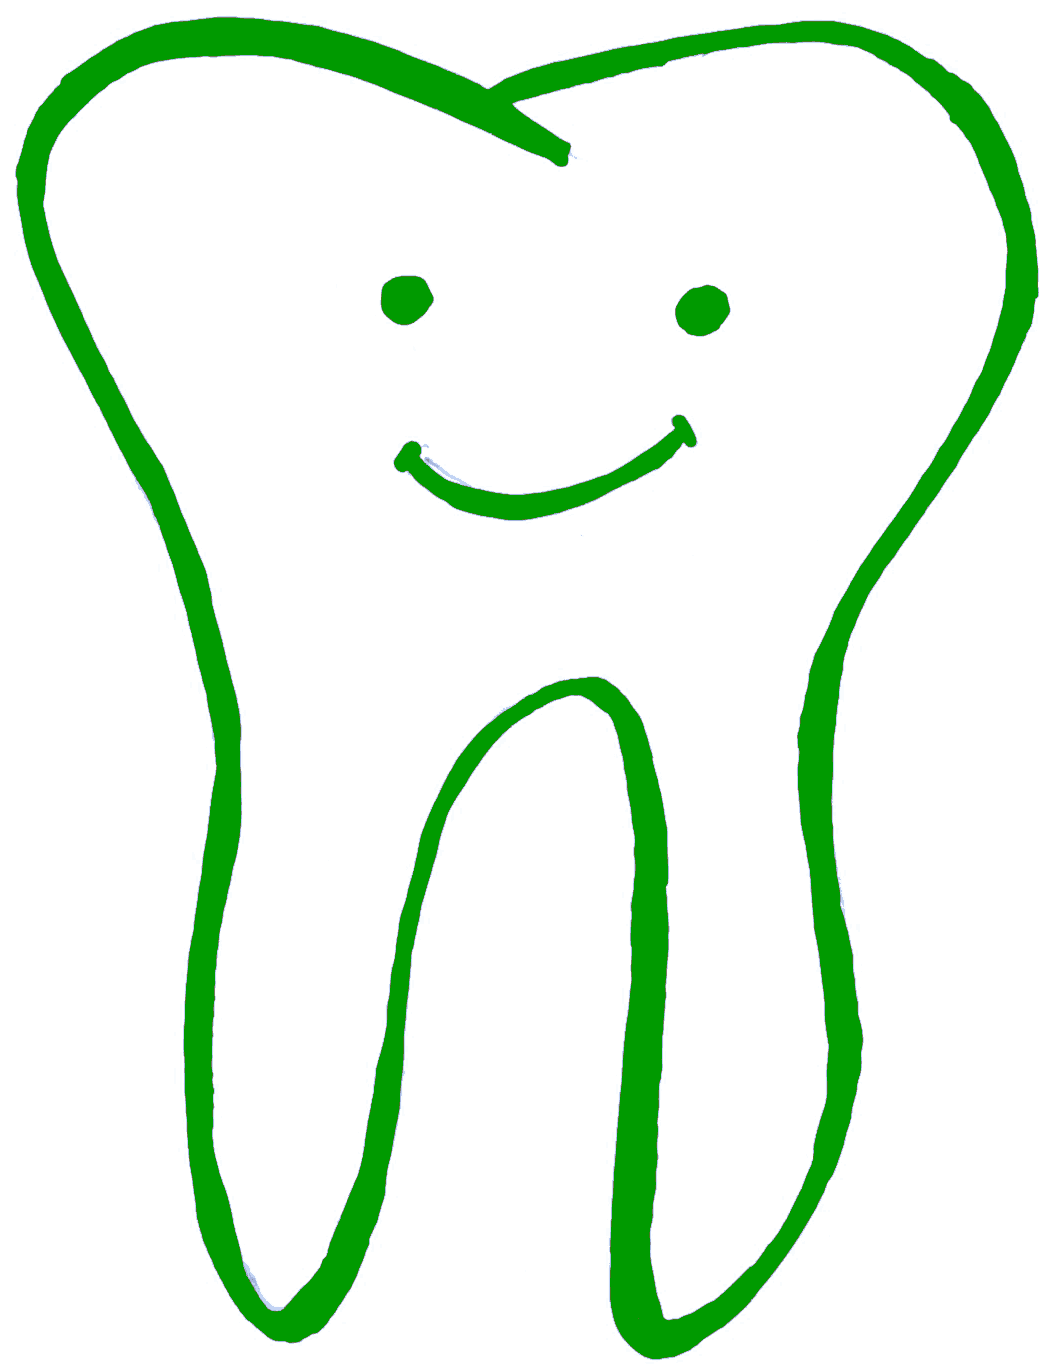 gesunder zahn